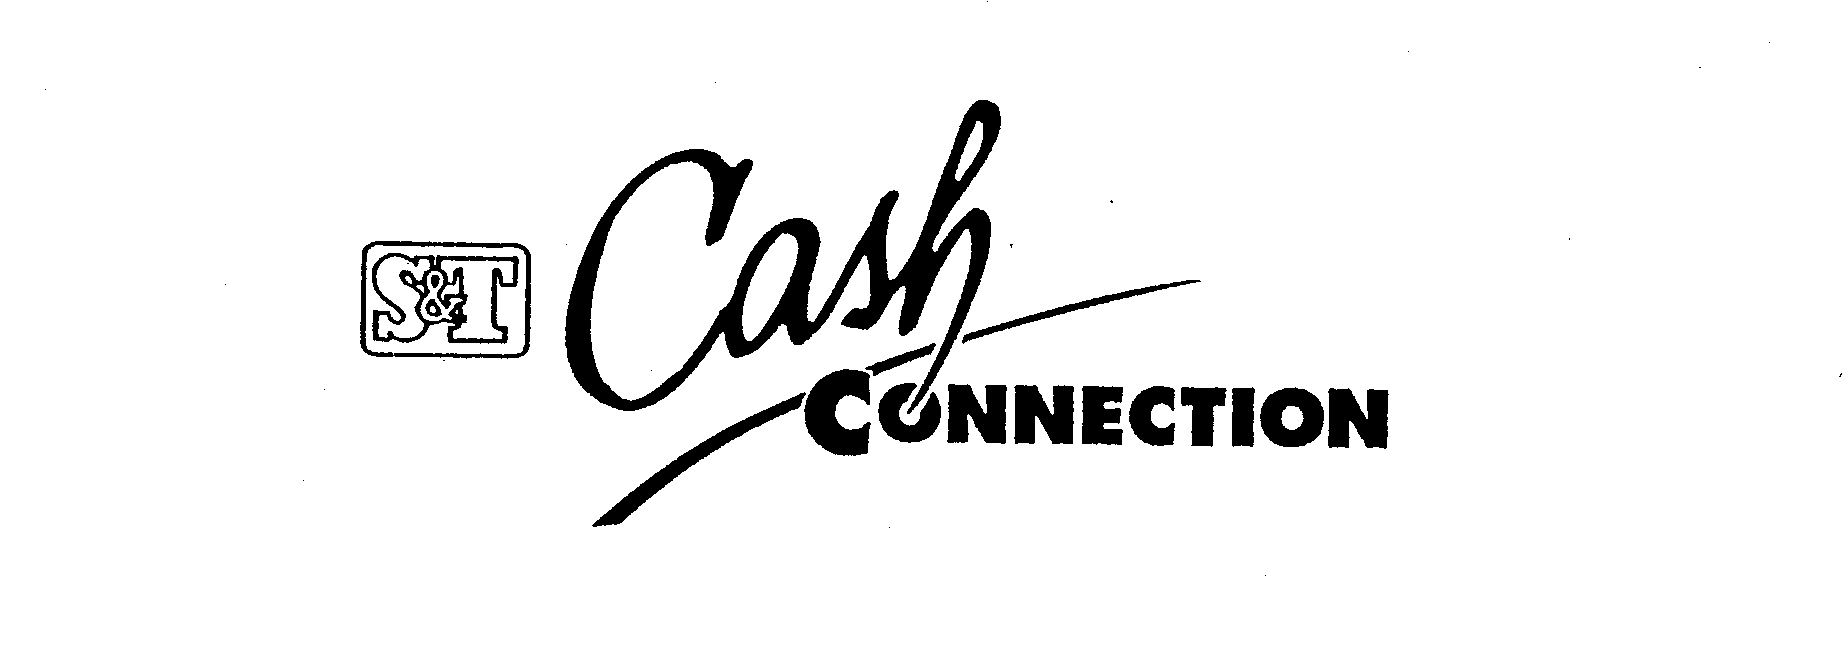  S&amp;T CASH CONNECTION